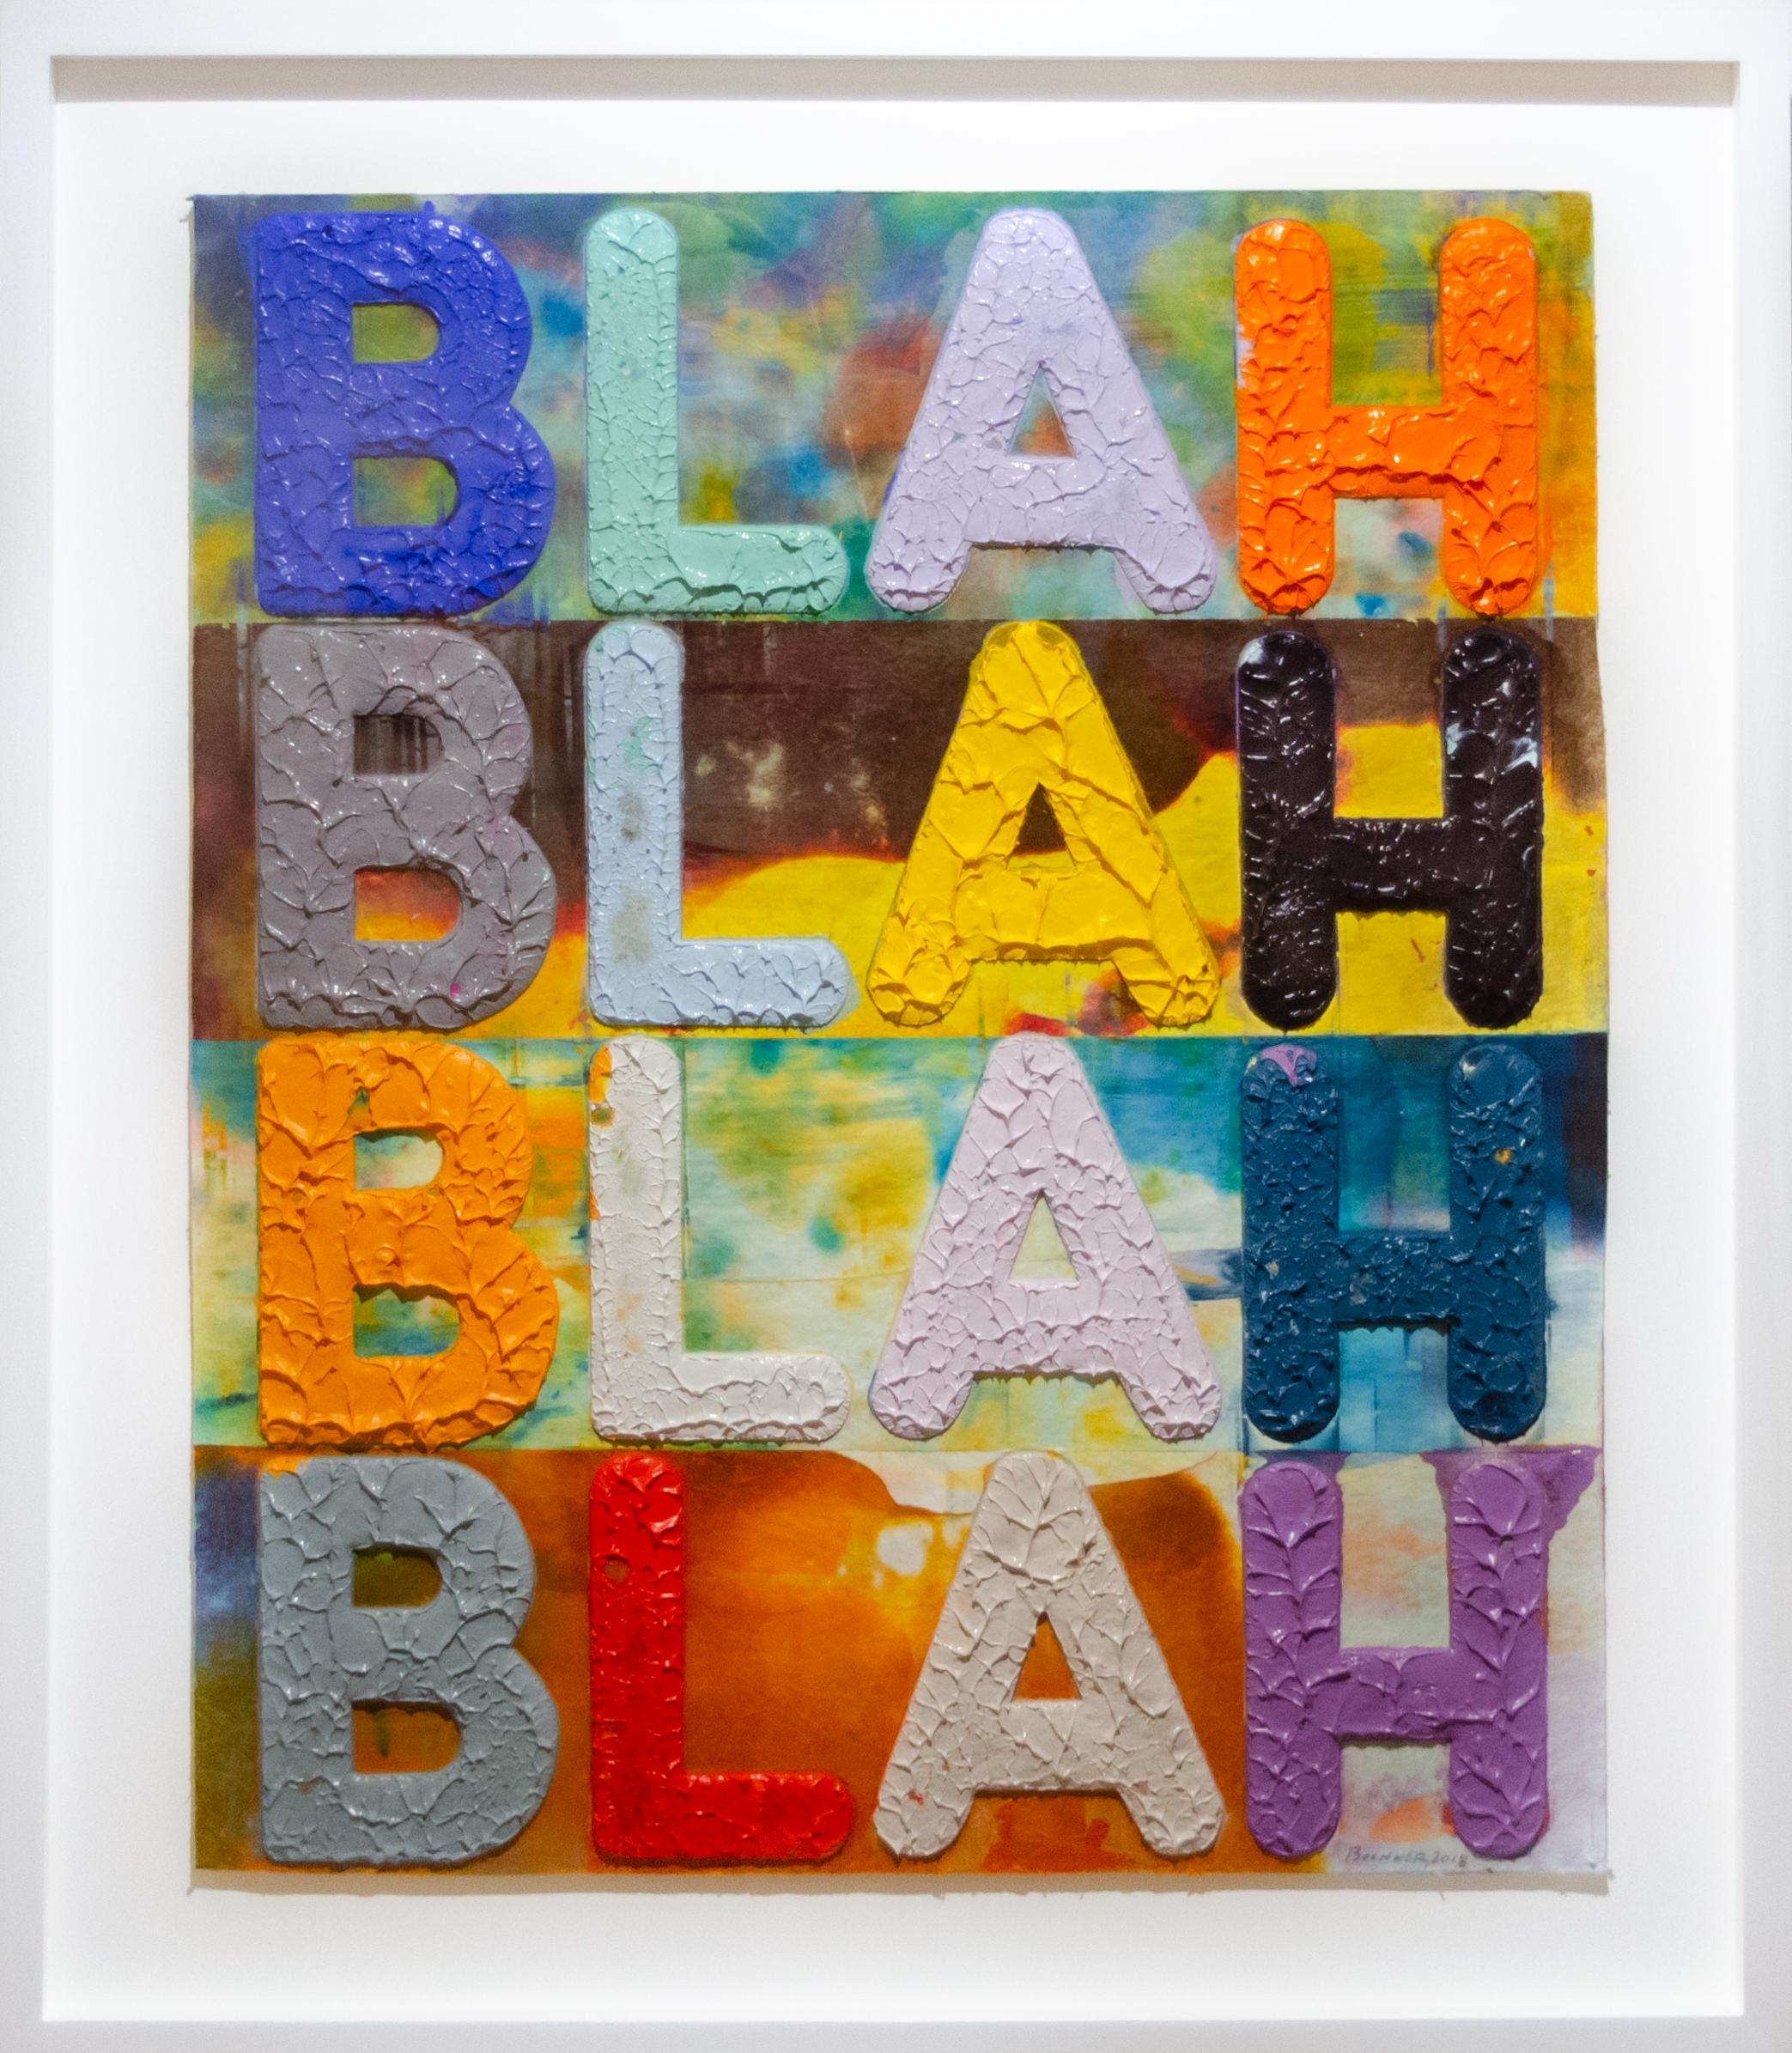 Blah, Blah, Blah - Art by Mel Bochner